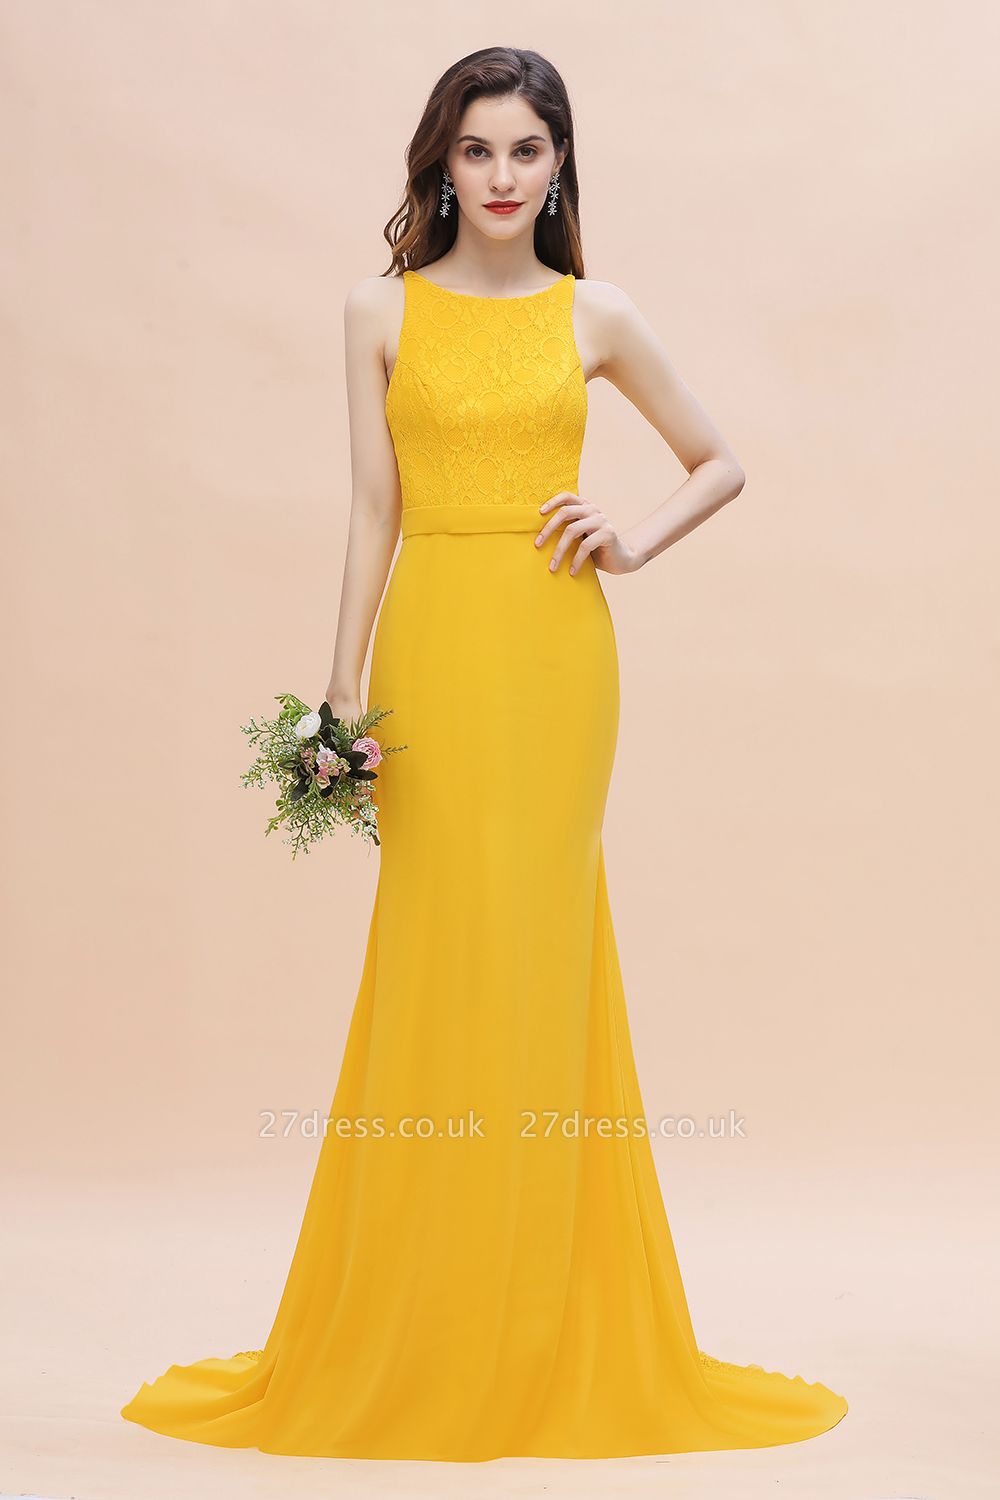 Jewel Neck Mermaid Bridesmaid Dress Yellow Lace Chiffon Long Wedding Party Dress